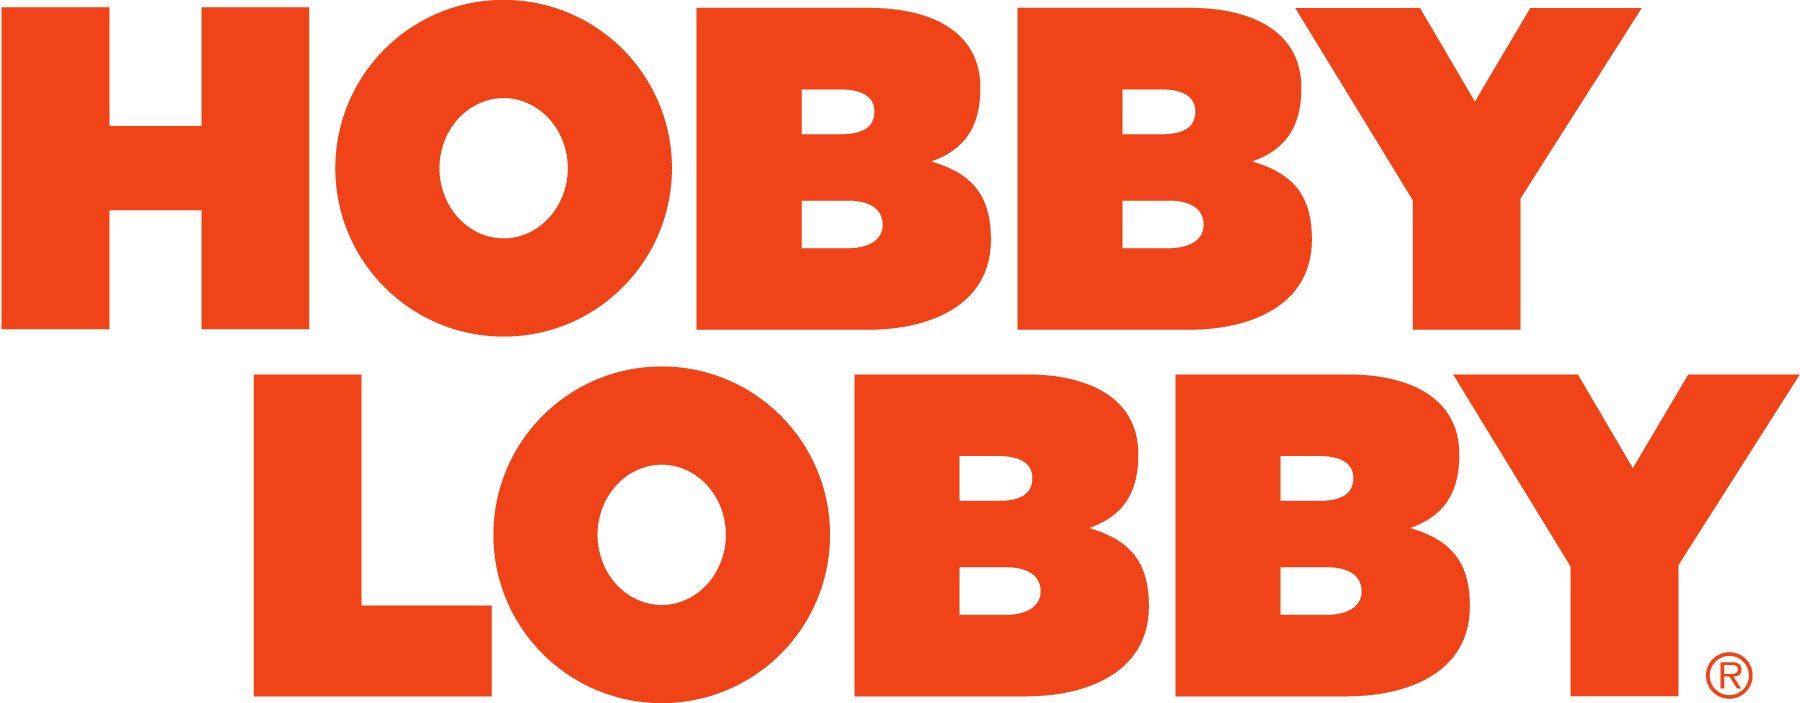 Hobby Lobby Coupons Logo